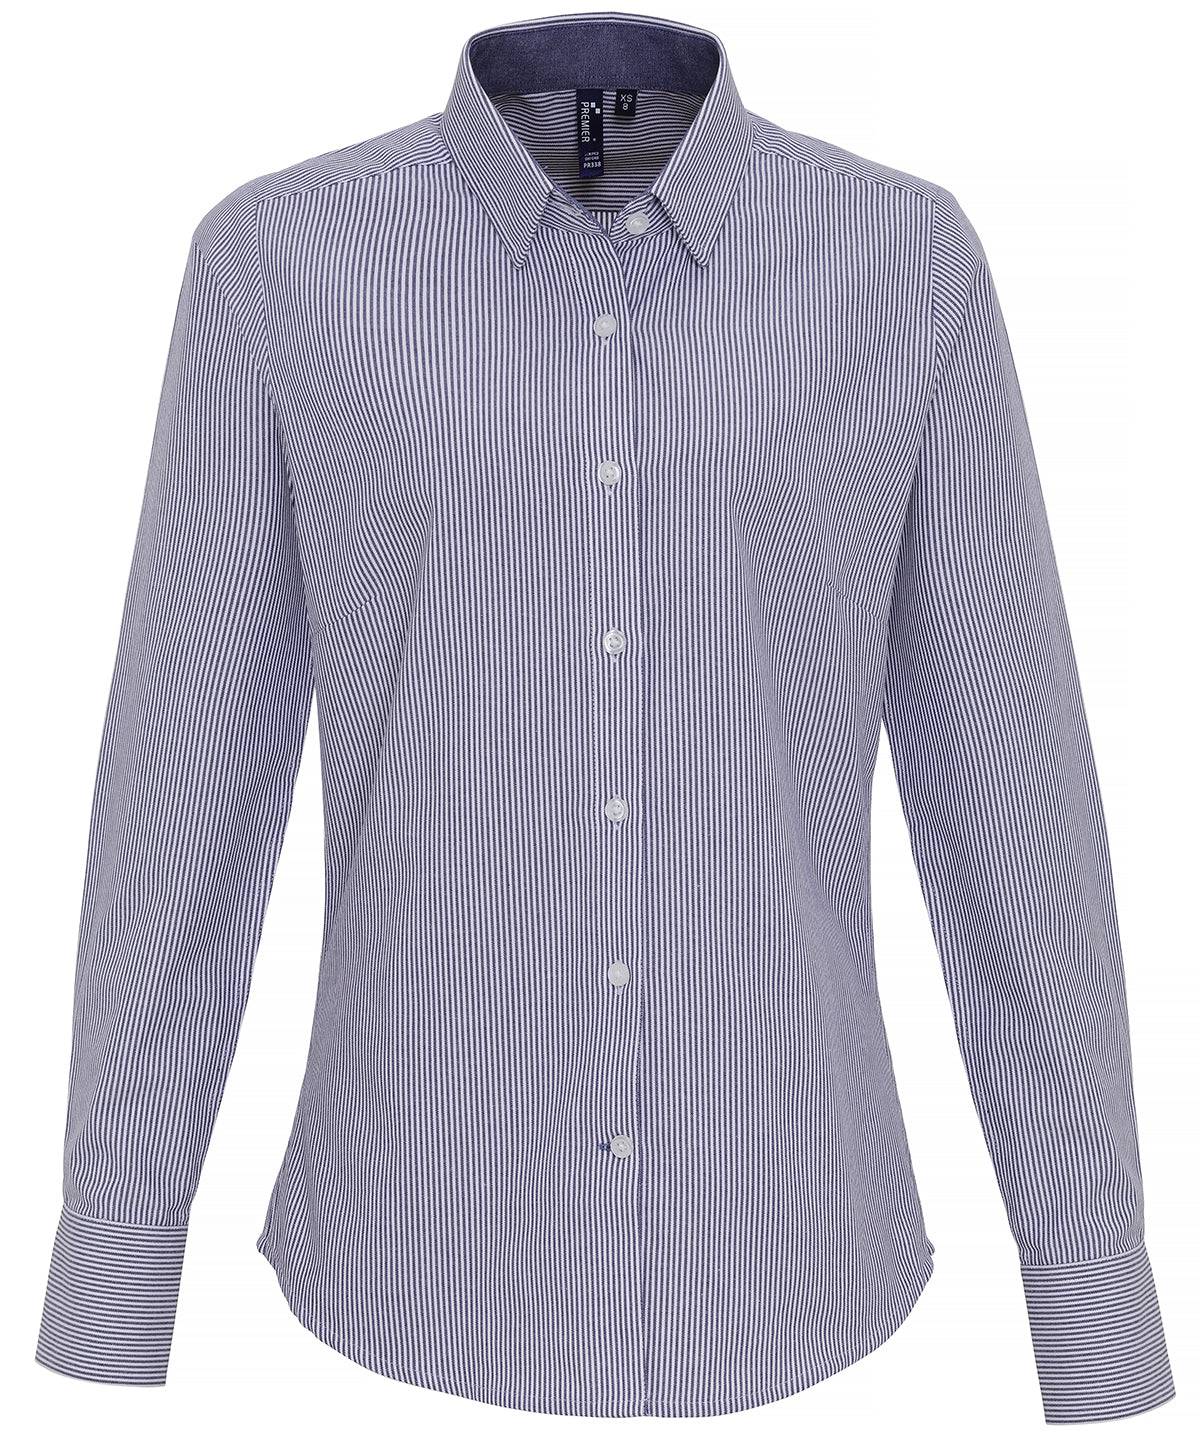 White/Navy - Women's cotton-rich Oxford stripes blouse